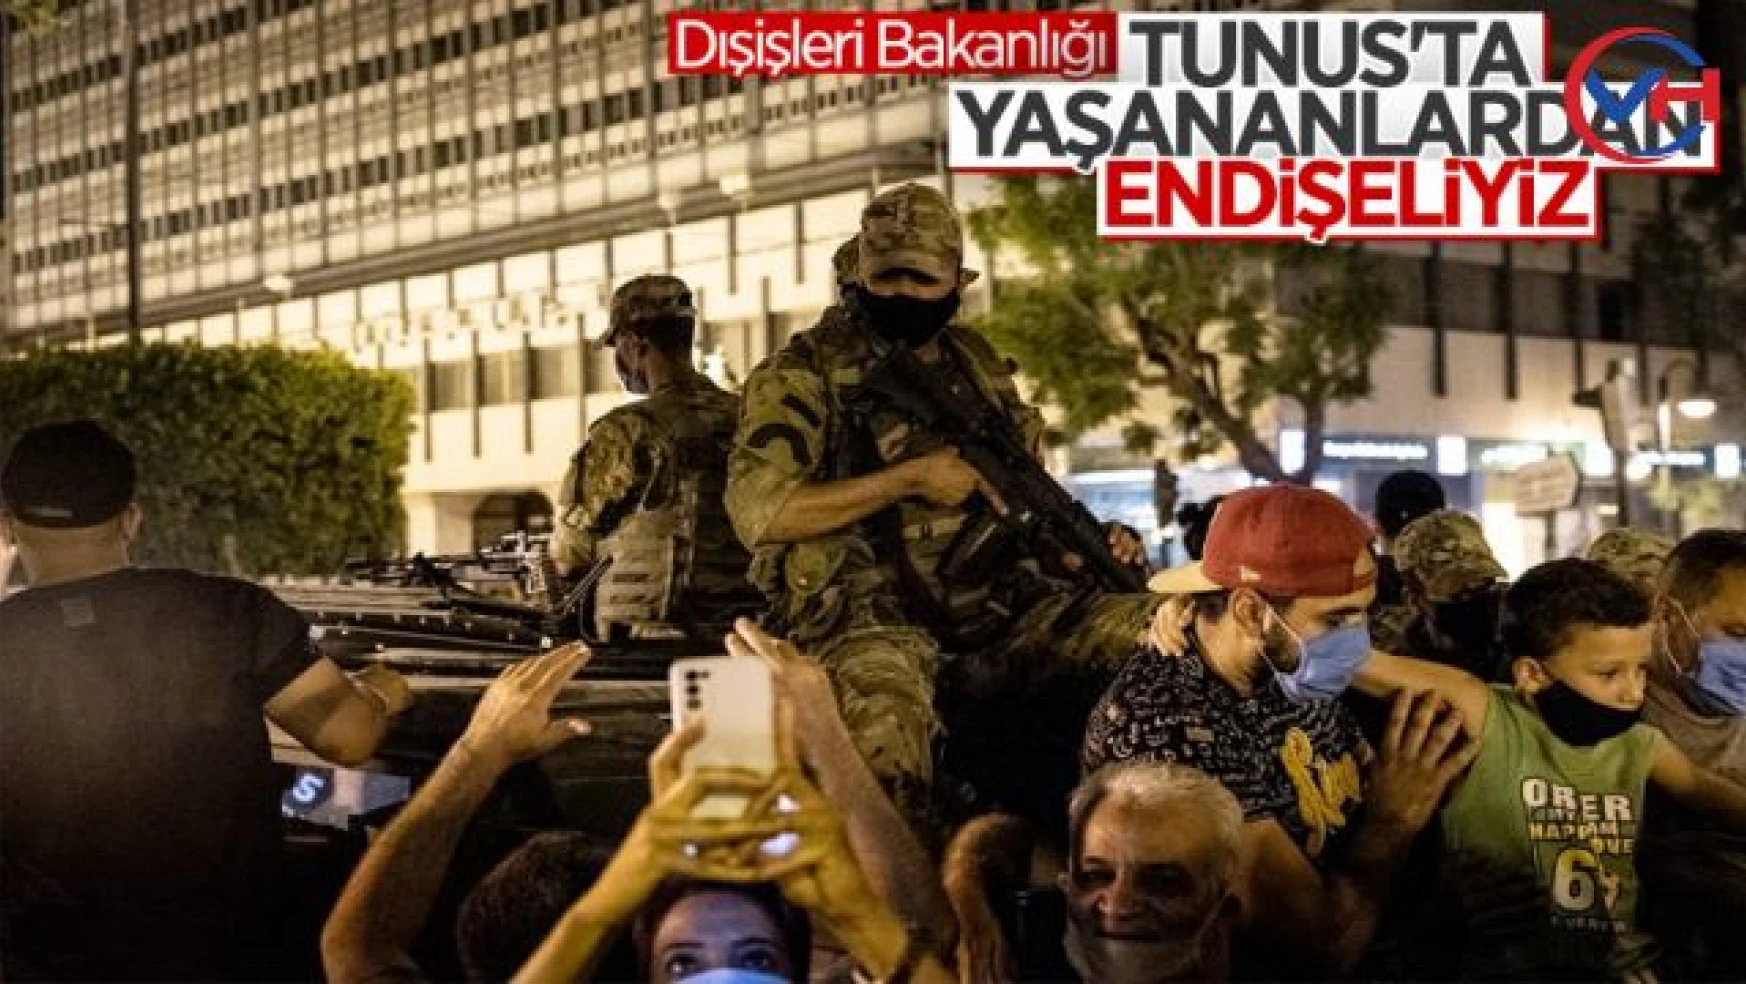 Türkiye'nin Tunus'ta yaşananlara karşı tavrı net